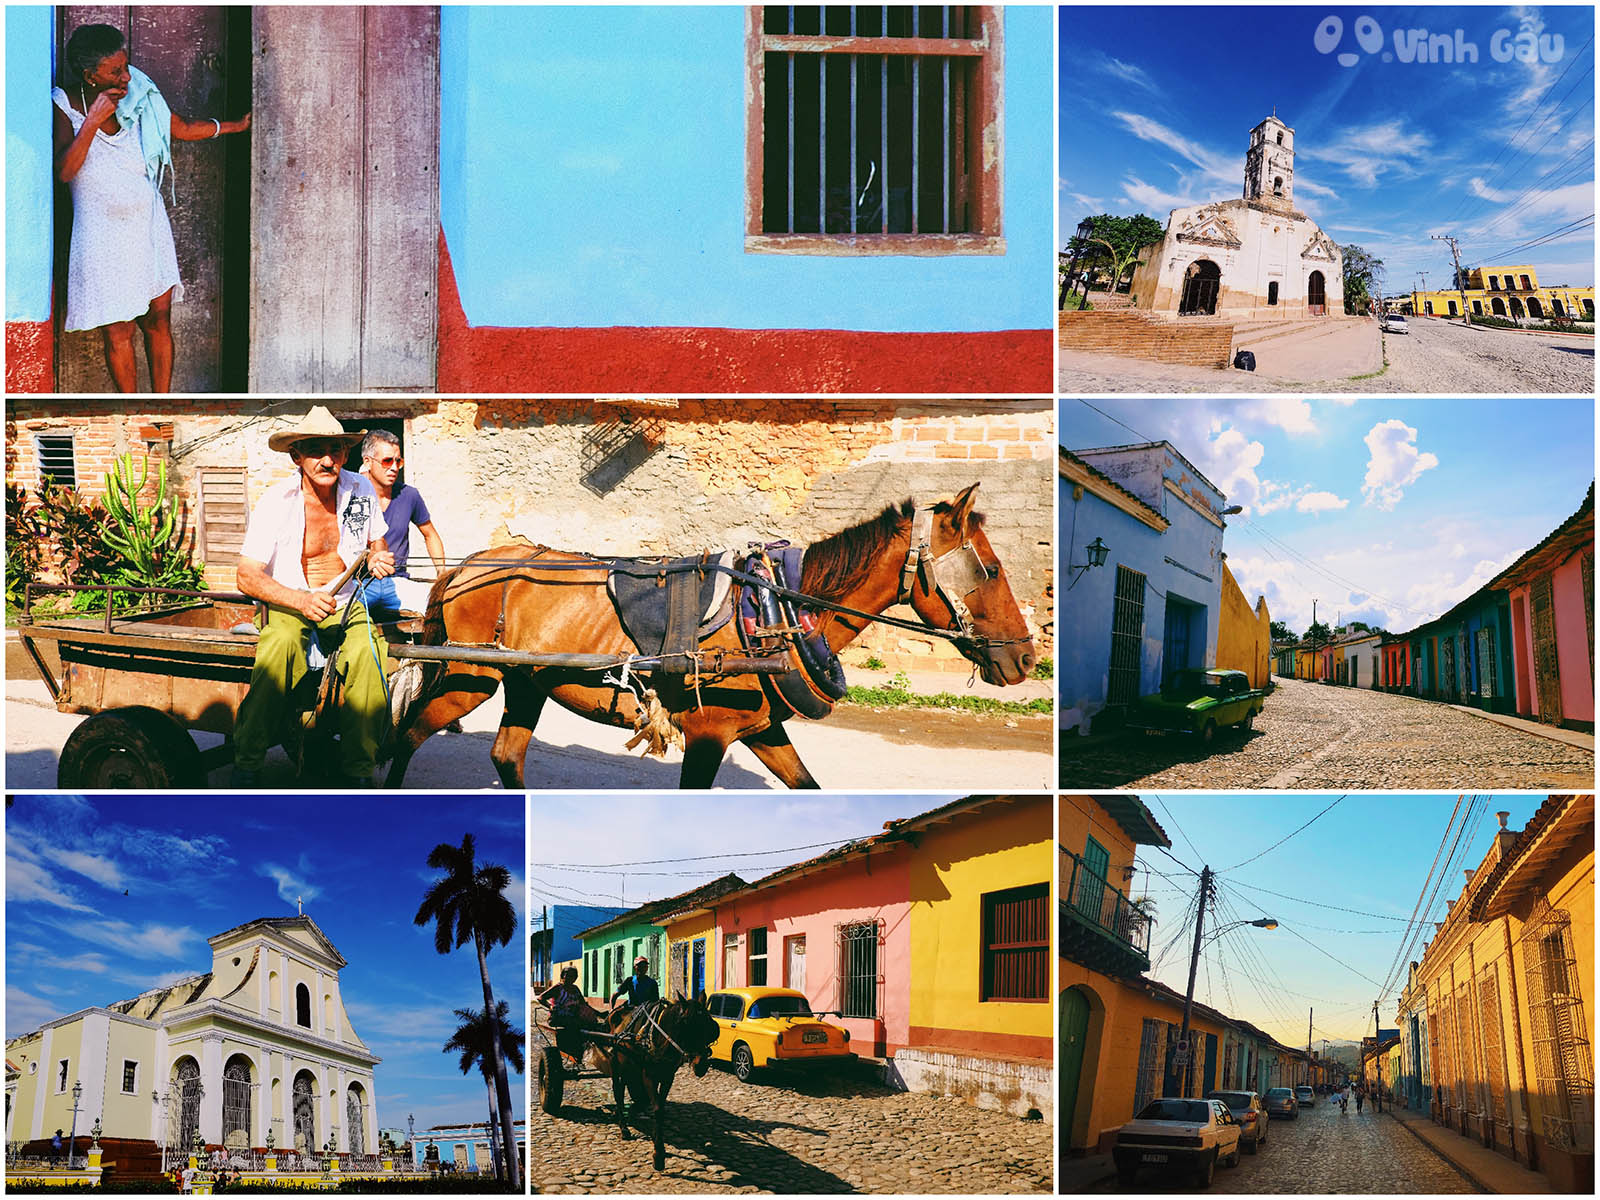 Du lịch Cuba tự túc - thành phố cổ Trinidad